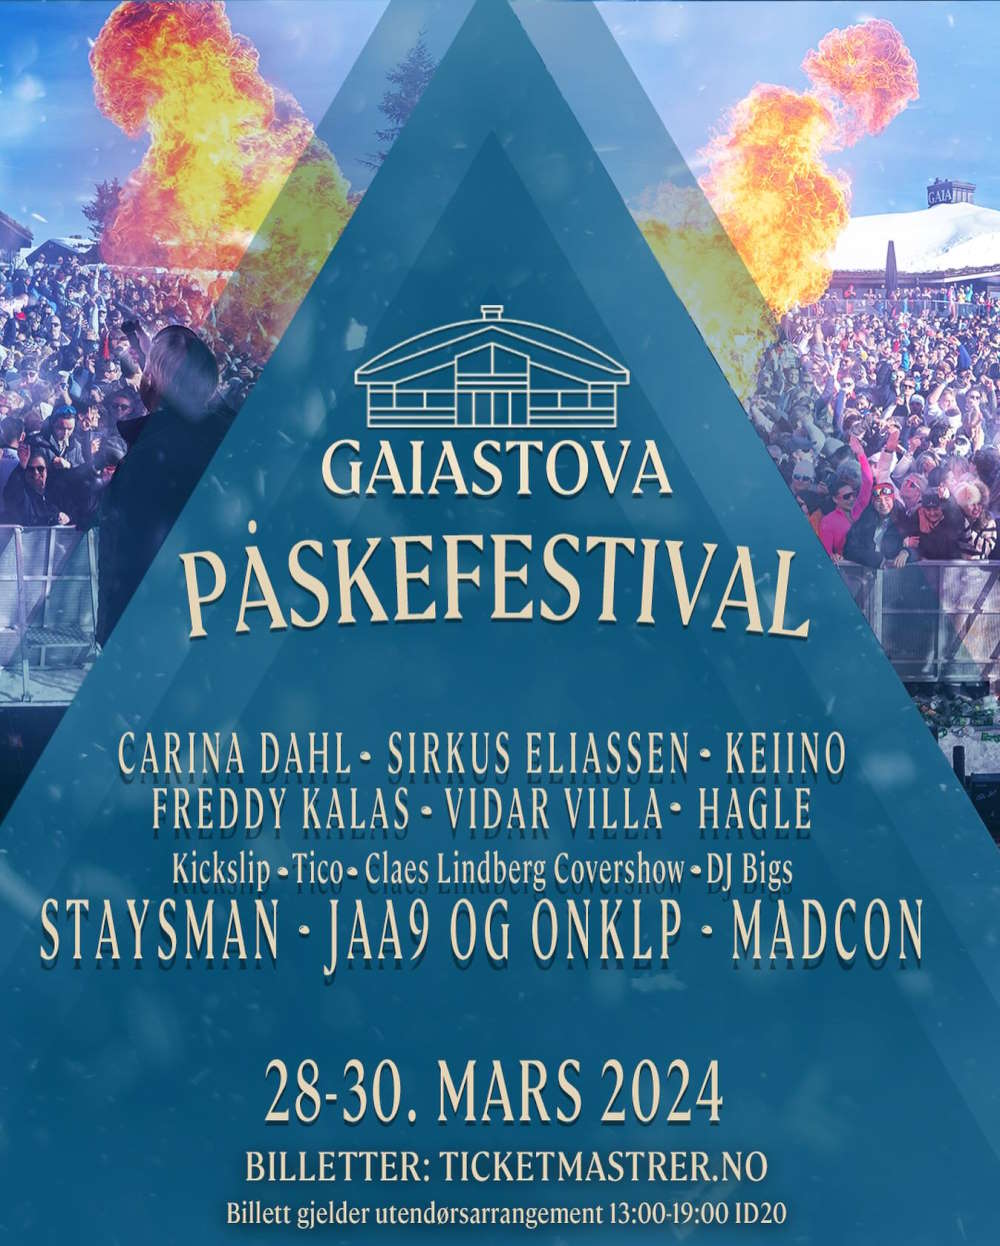 Påskefestival Gaiastova